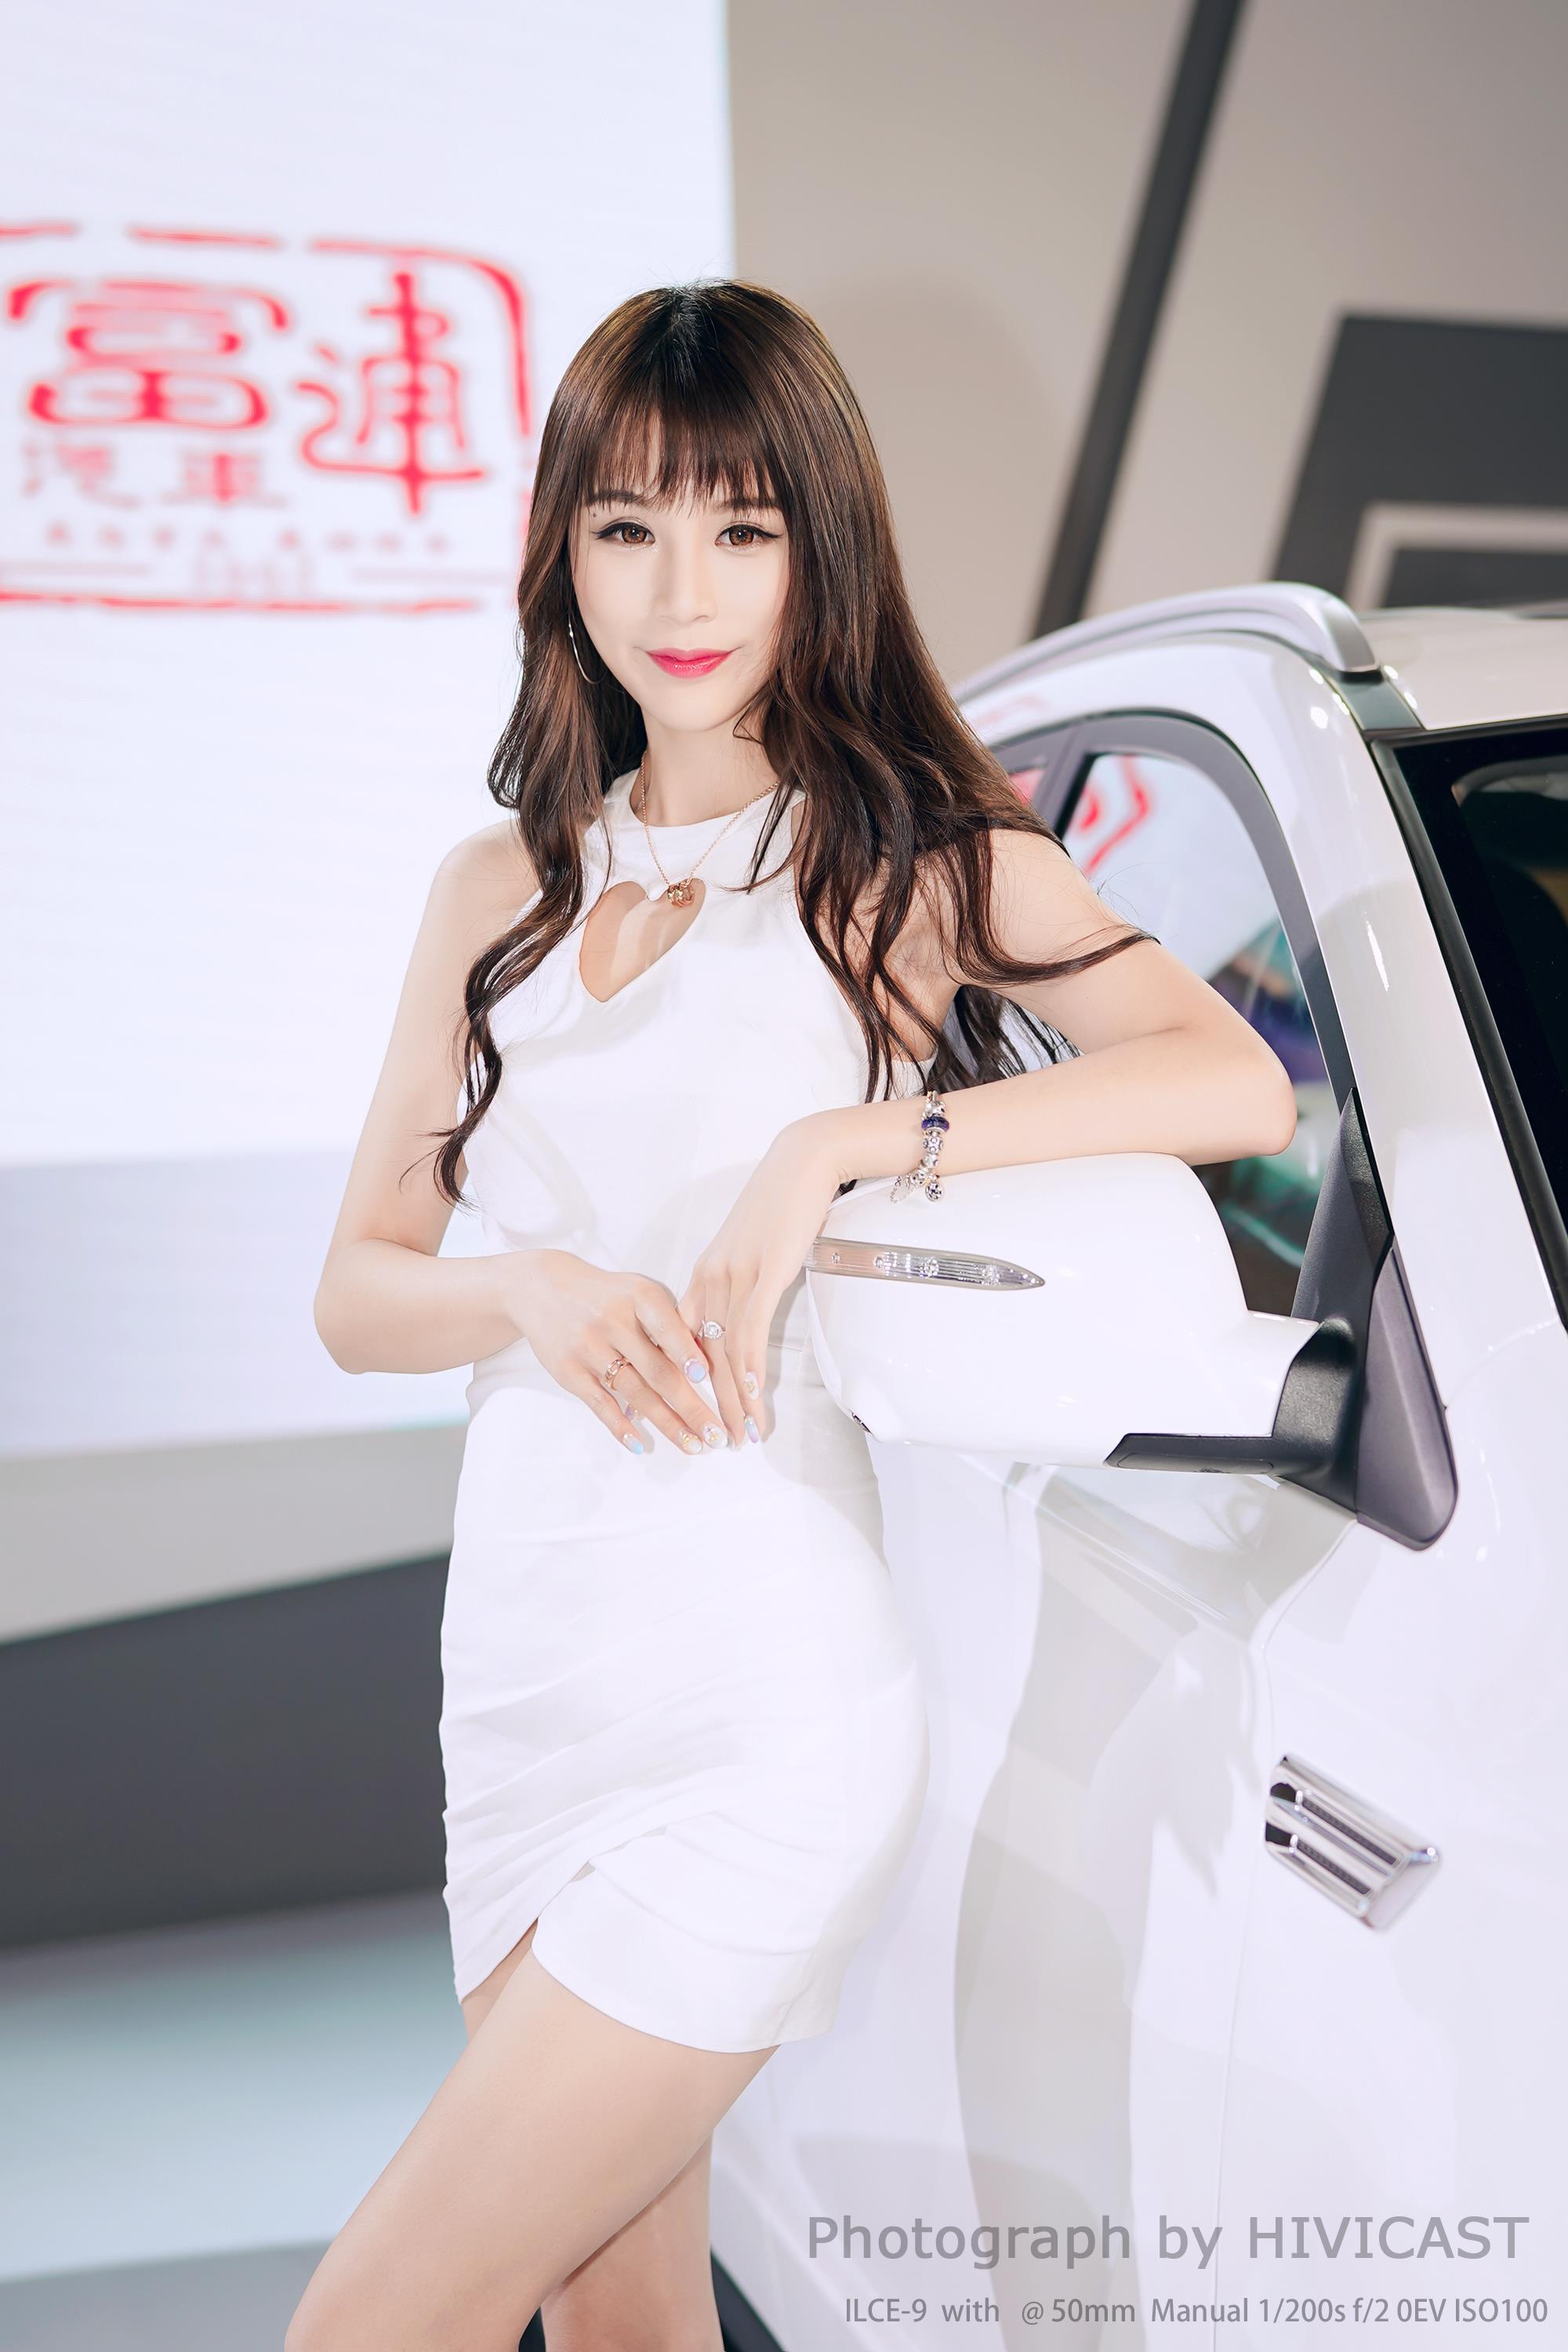 2017广州车展 华泰汽车展台 身穿白色吊脖连身裙的美女车模,